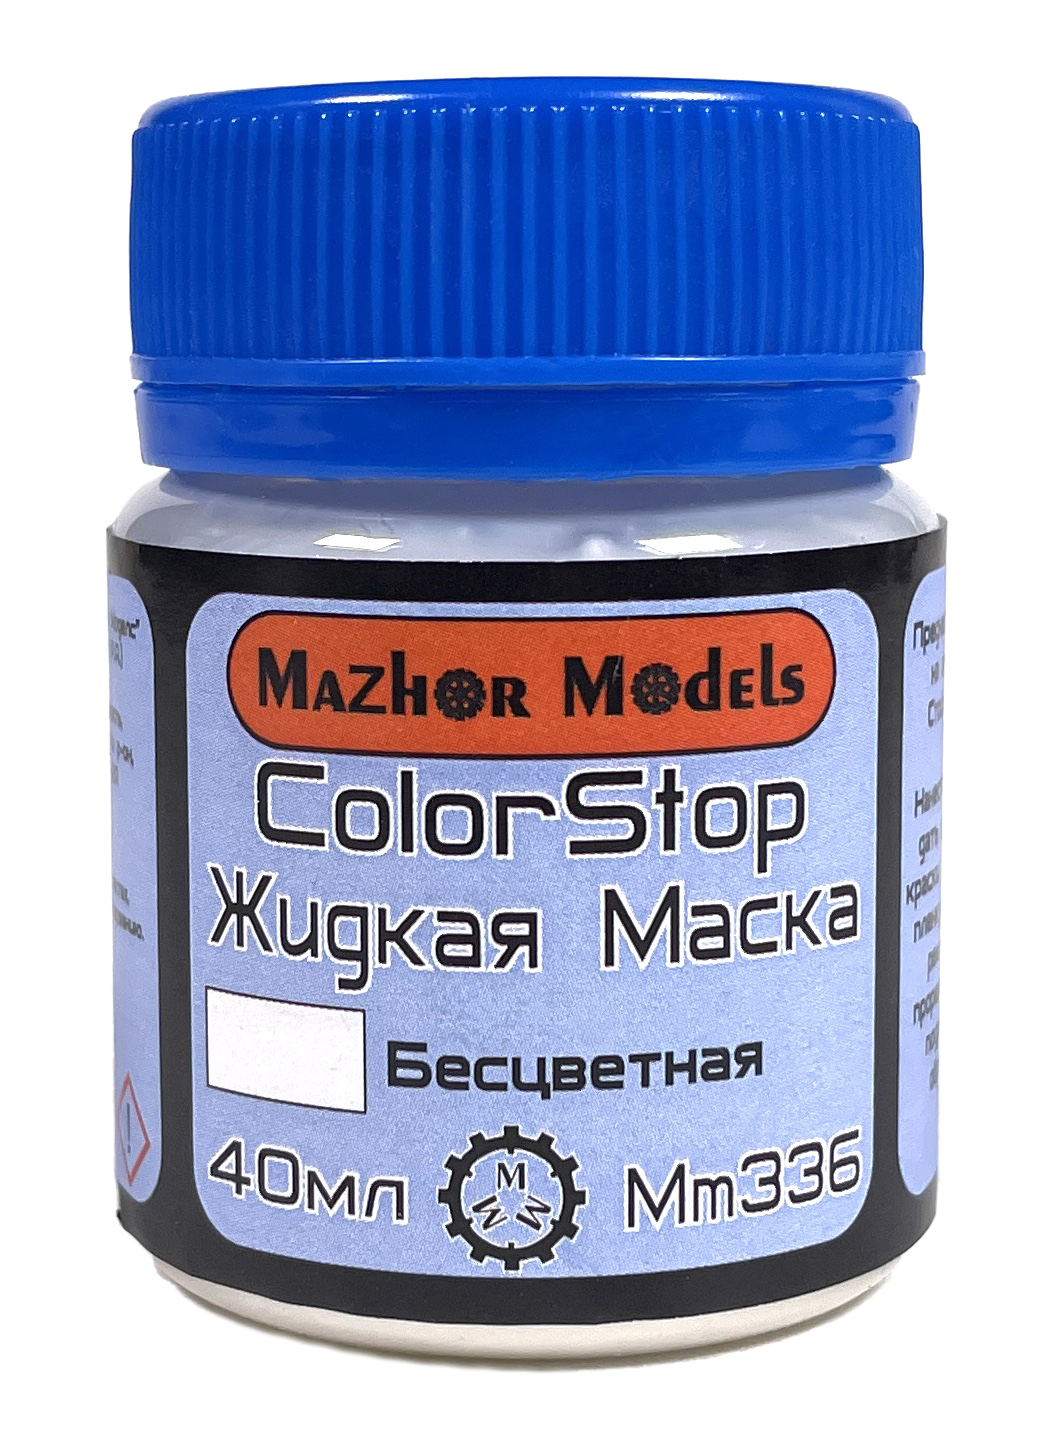 Жидкая маска (Color stop) Бесцветная 40 мл (Mazhor Models)